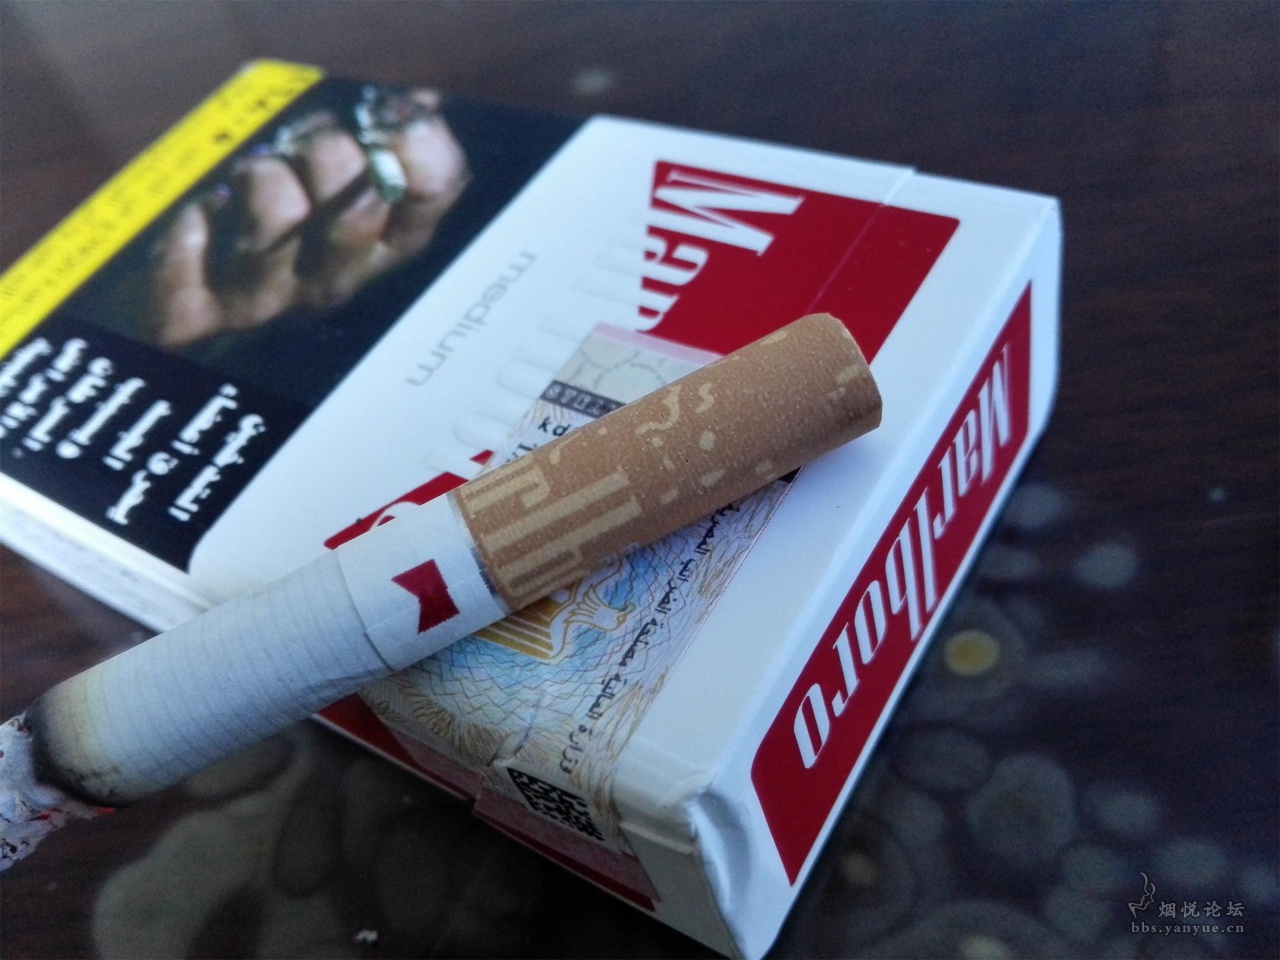 刚到手的万宝路和埃及 - 香烟品鉴 - 烟悦网论坛